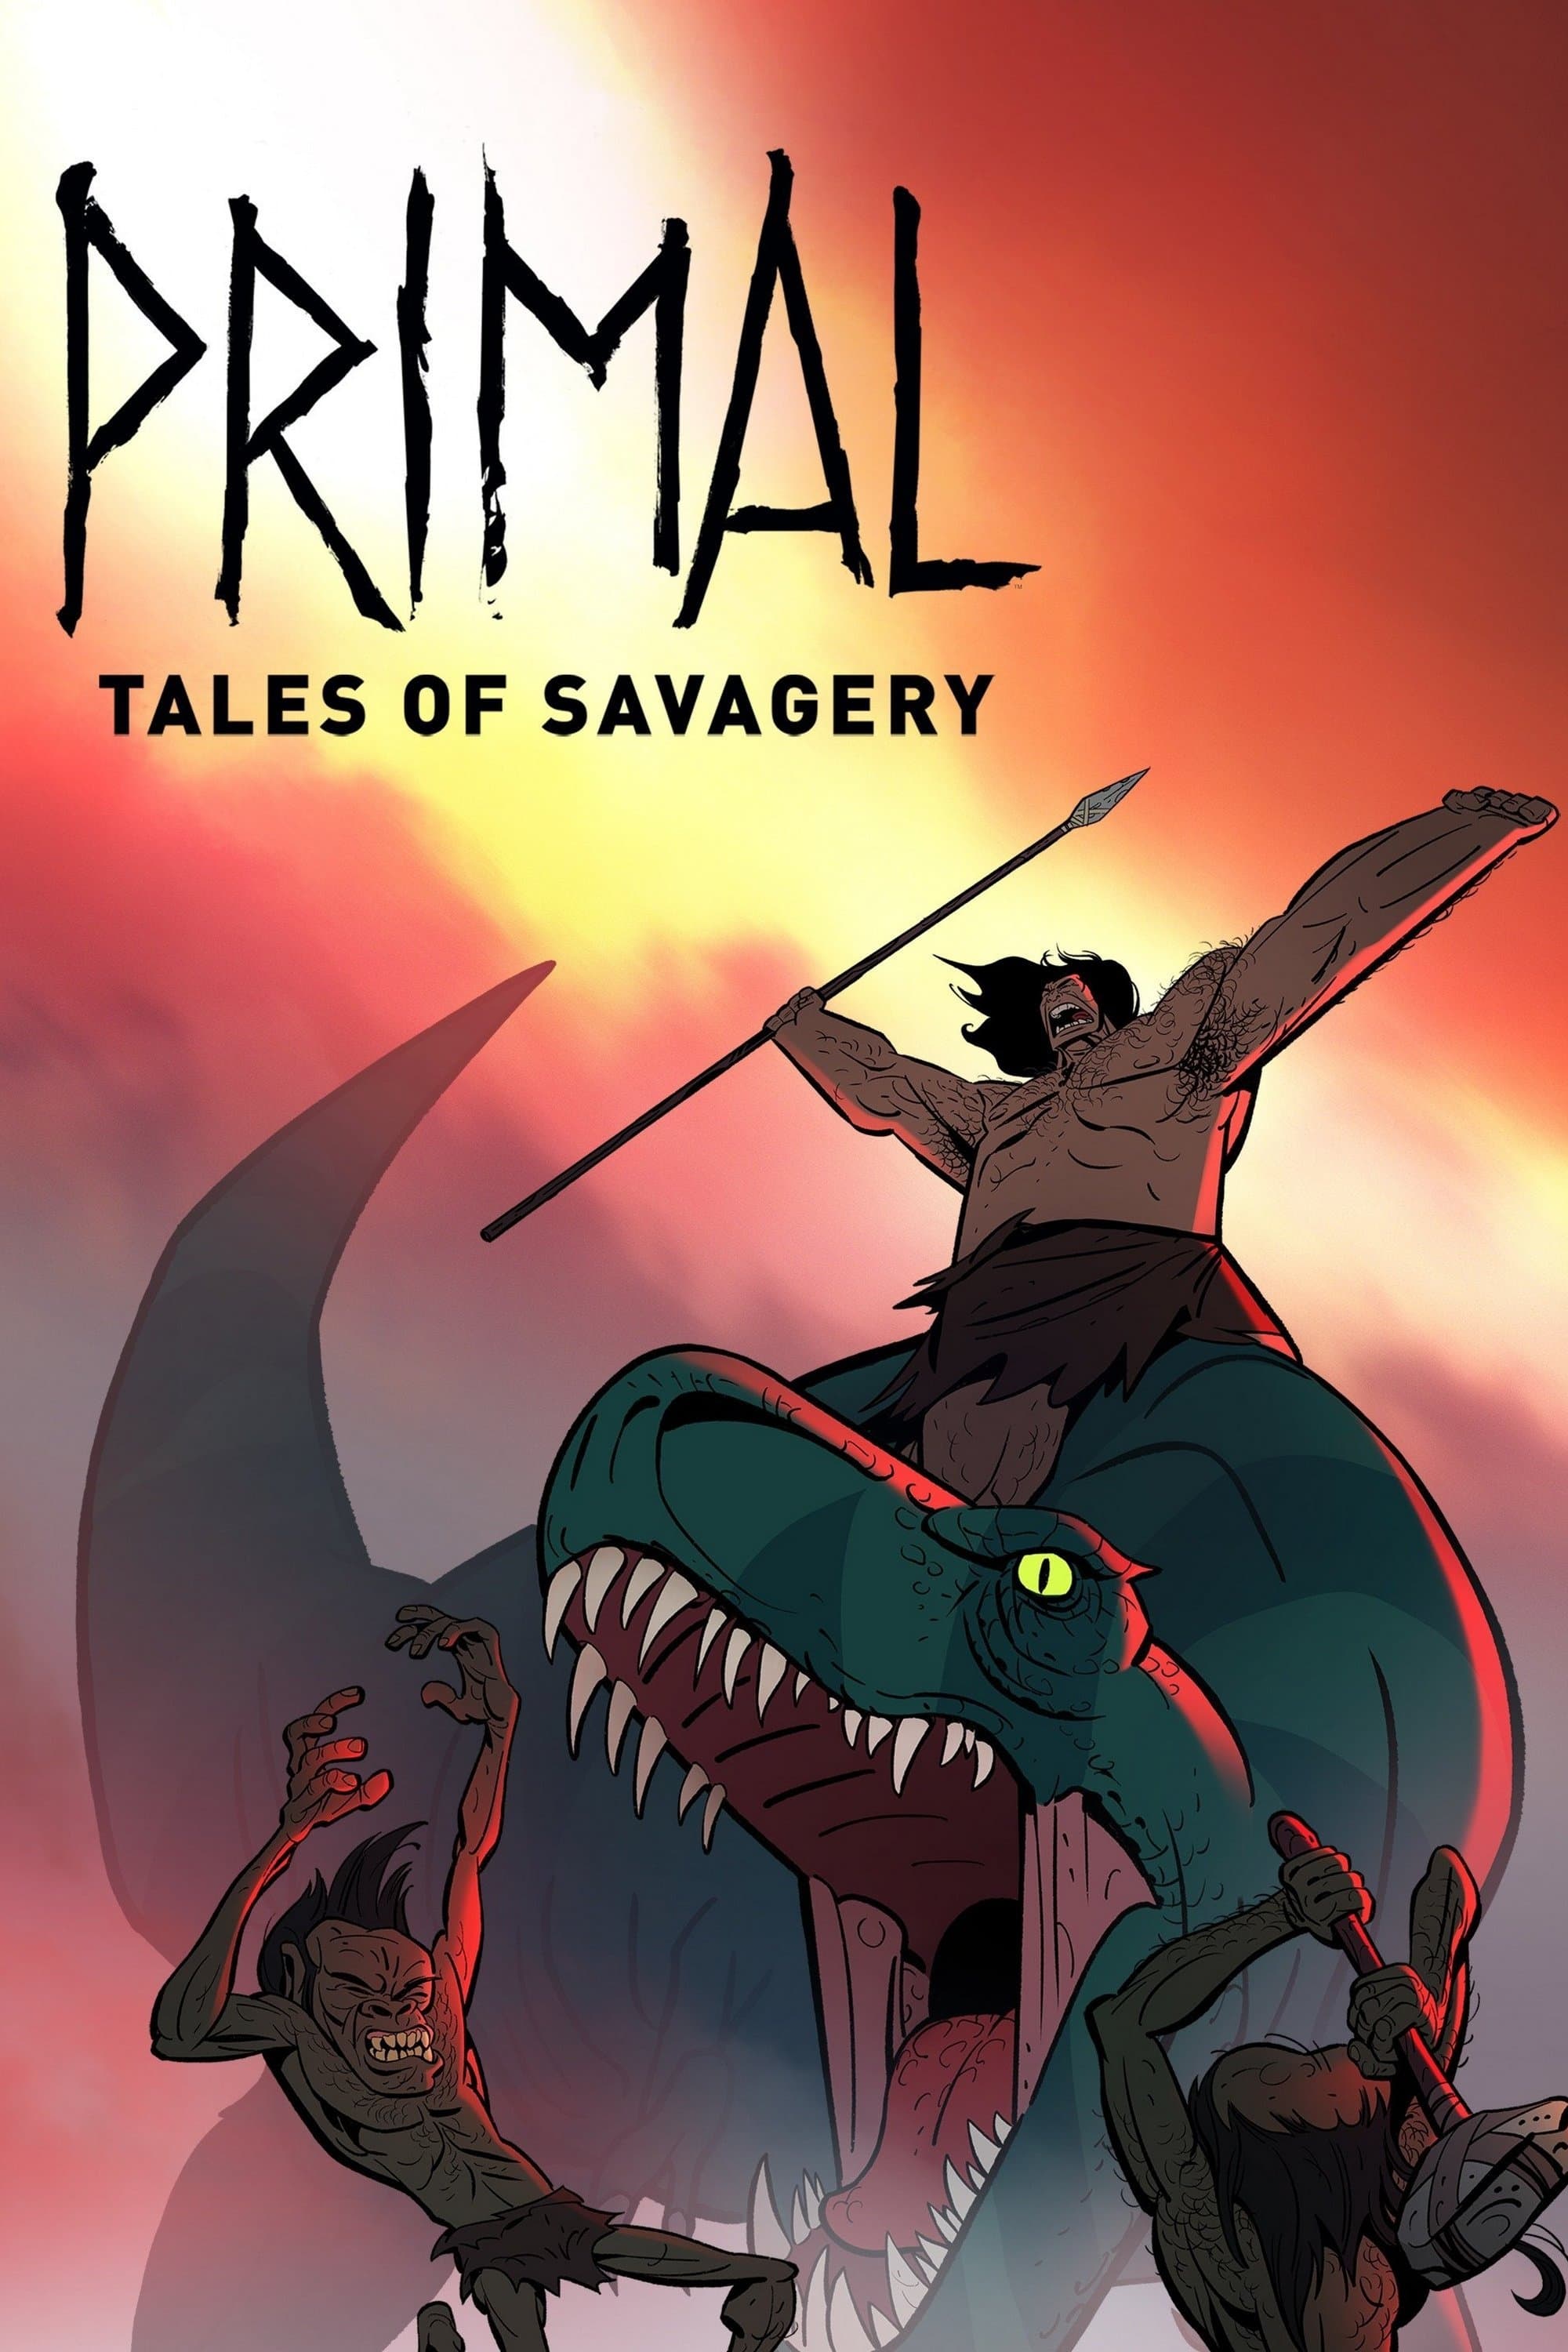 Primal: Tales of Savagery (2019)